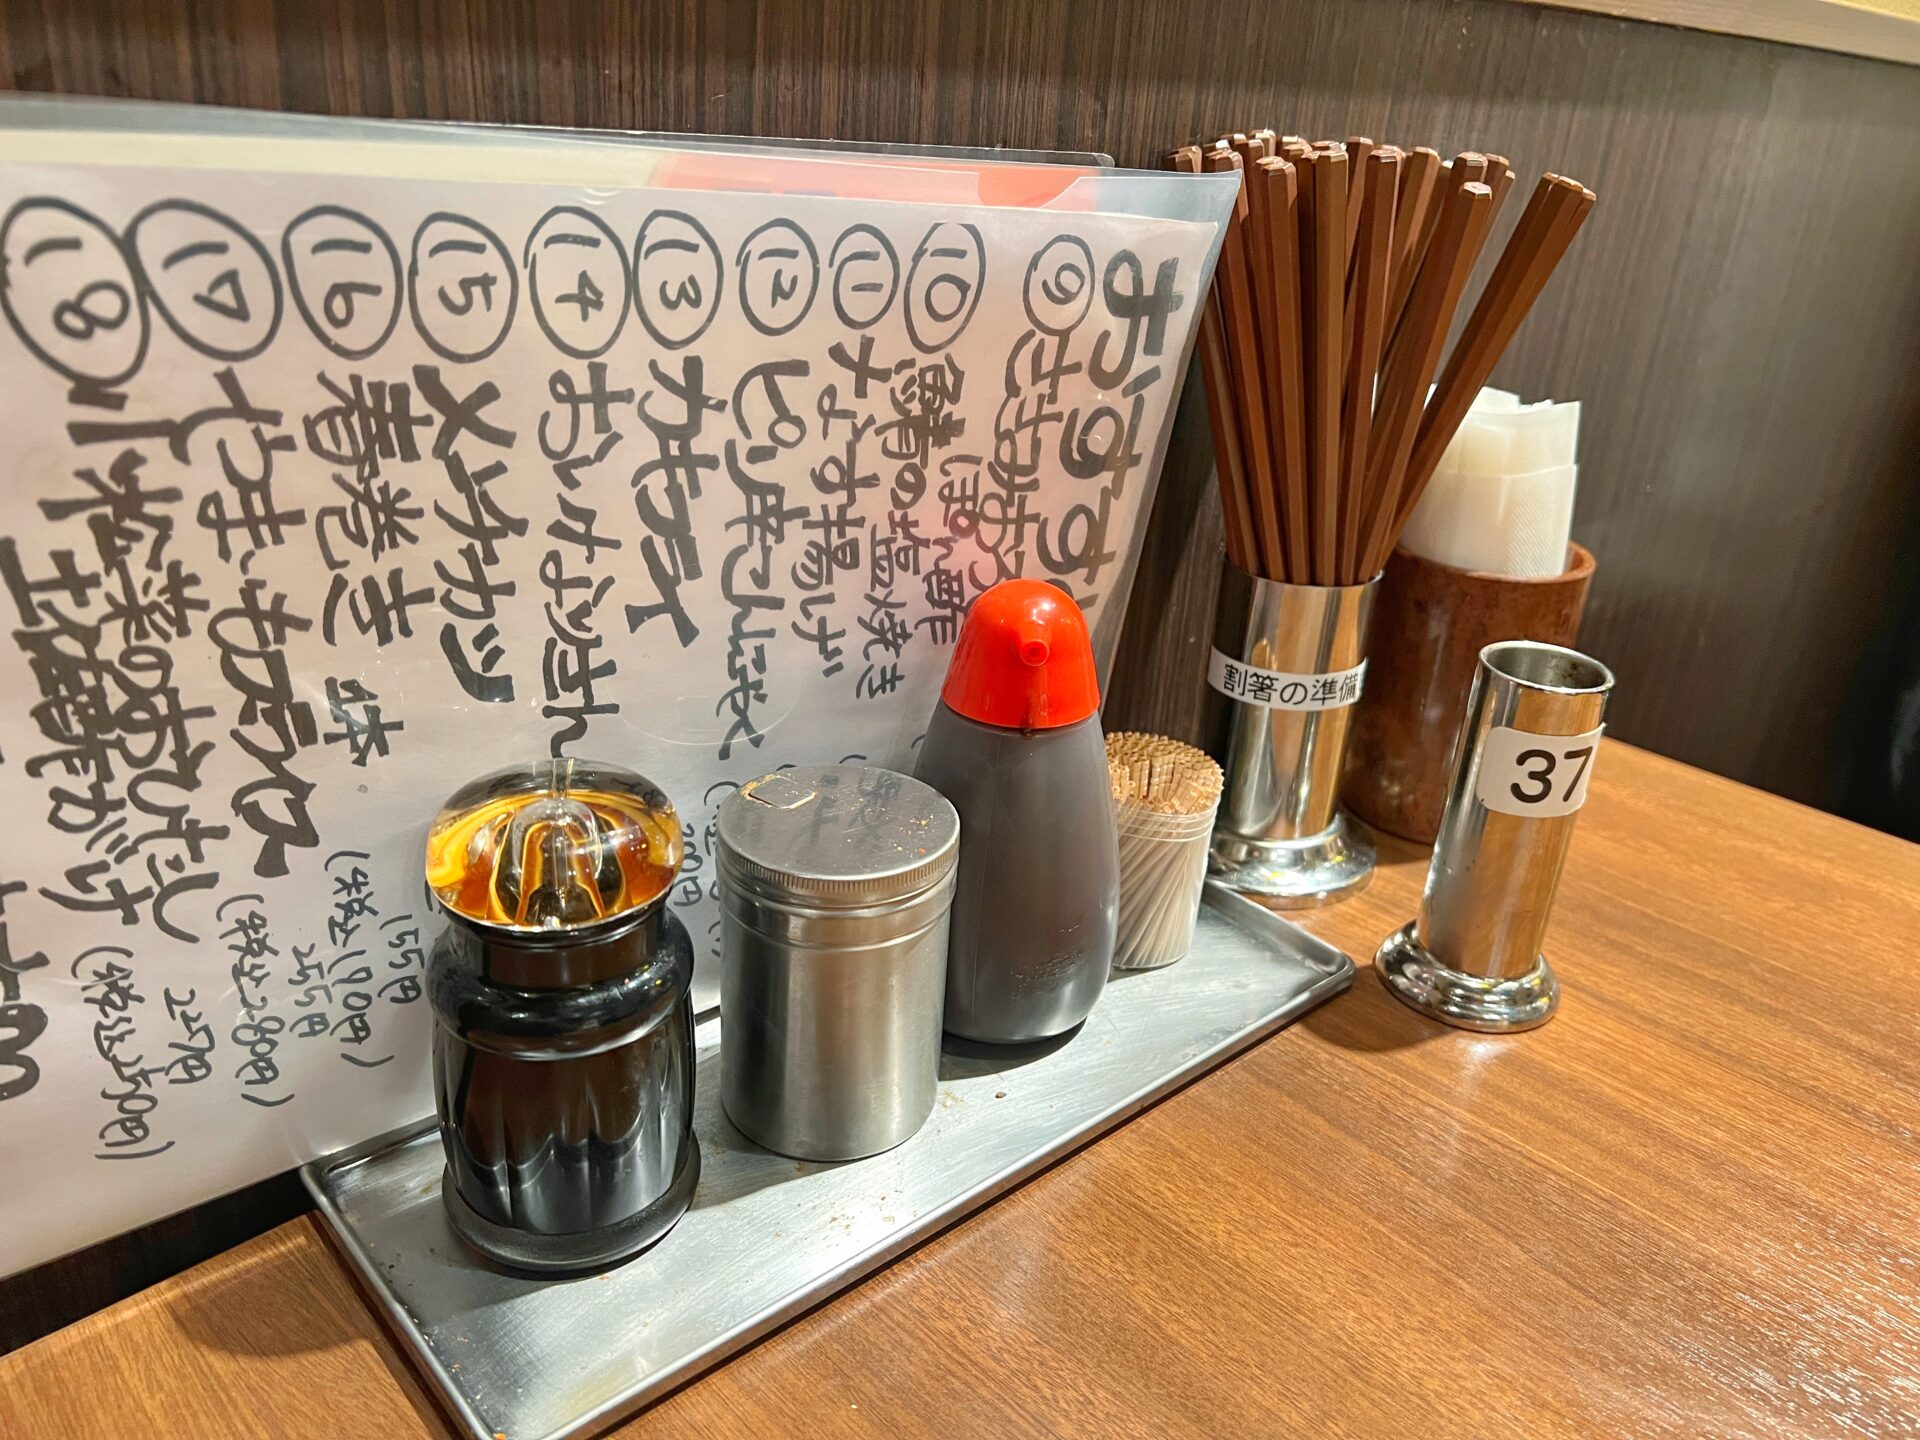 神コスパ「焼鳥日高 朝霞台店」変わったペンで注文できる爆安居酒屋で食べまくり